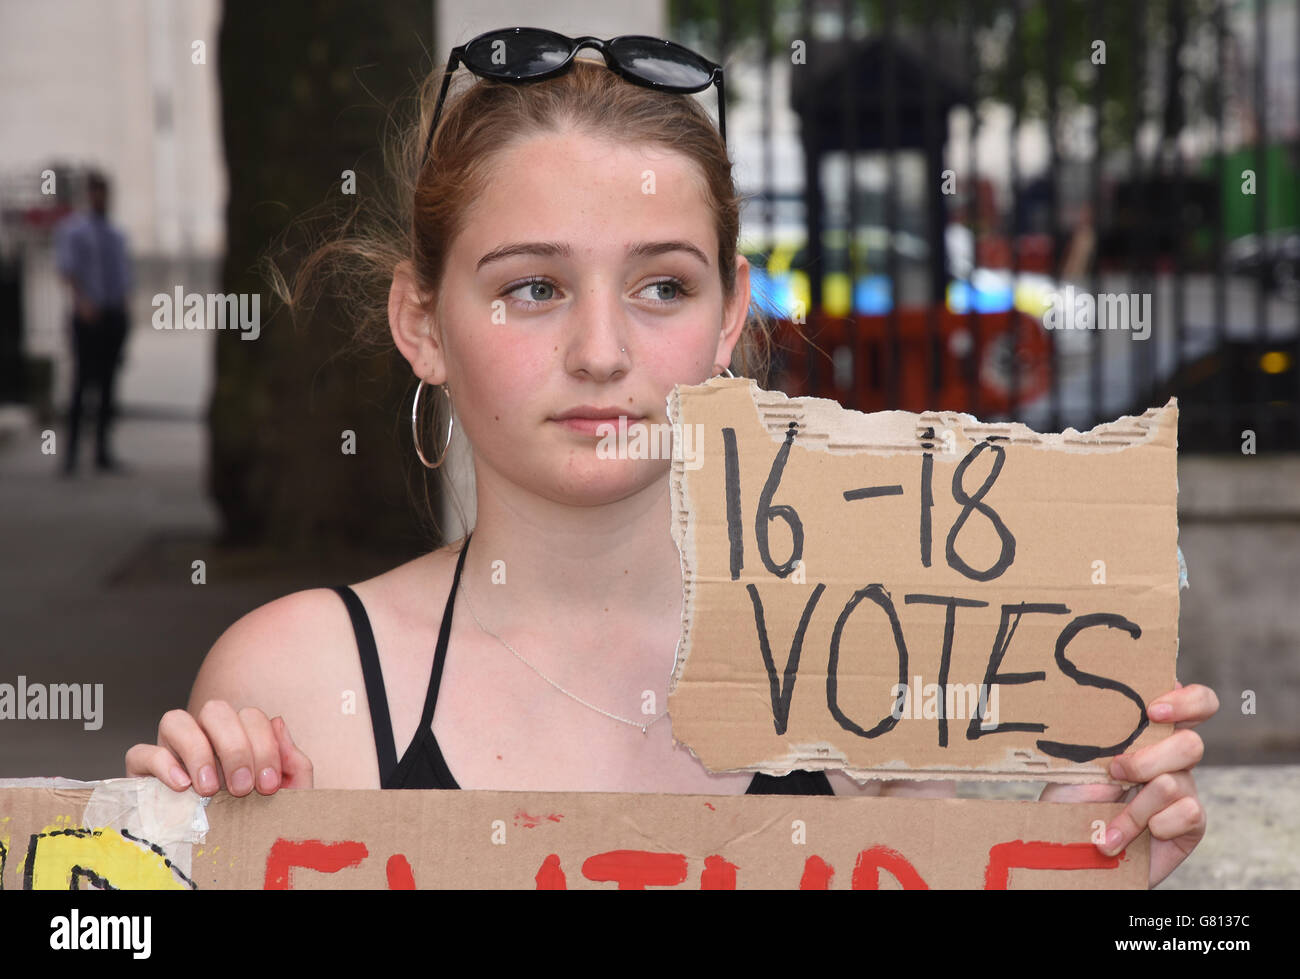 Gli adolescenti protestano contro la Brexit e contro il diritto di voto dei bambini di 16-17 anni. Di fronte al numero 10 Downing Street, Whitehall, Londra. REGNO UNITO Foto Stock